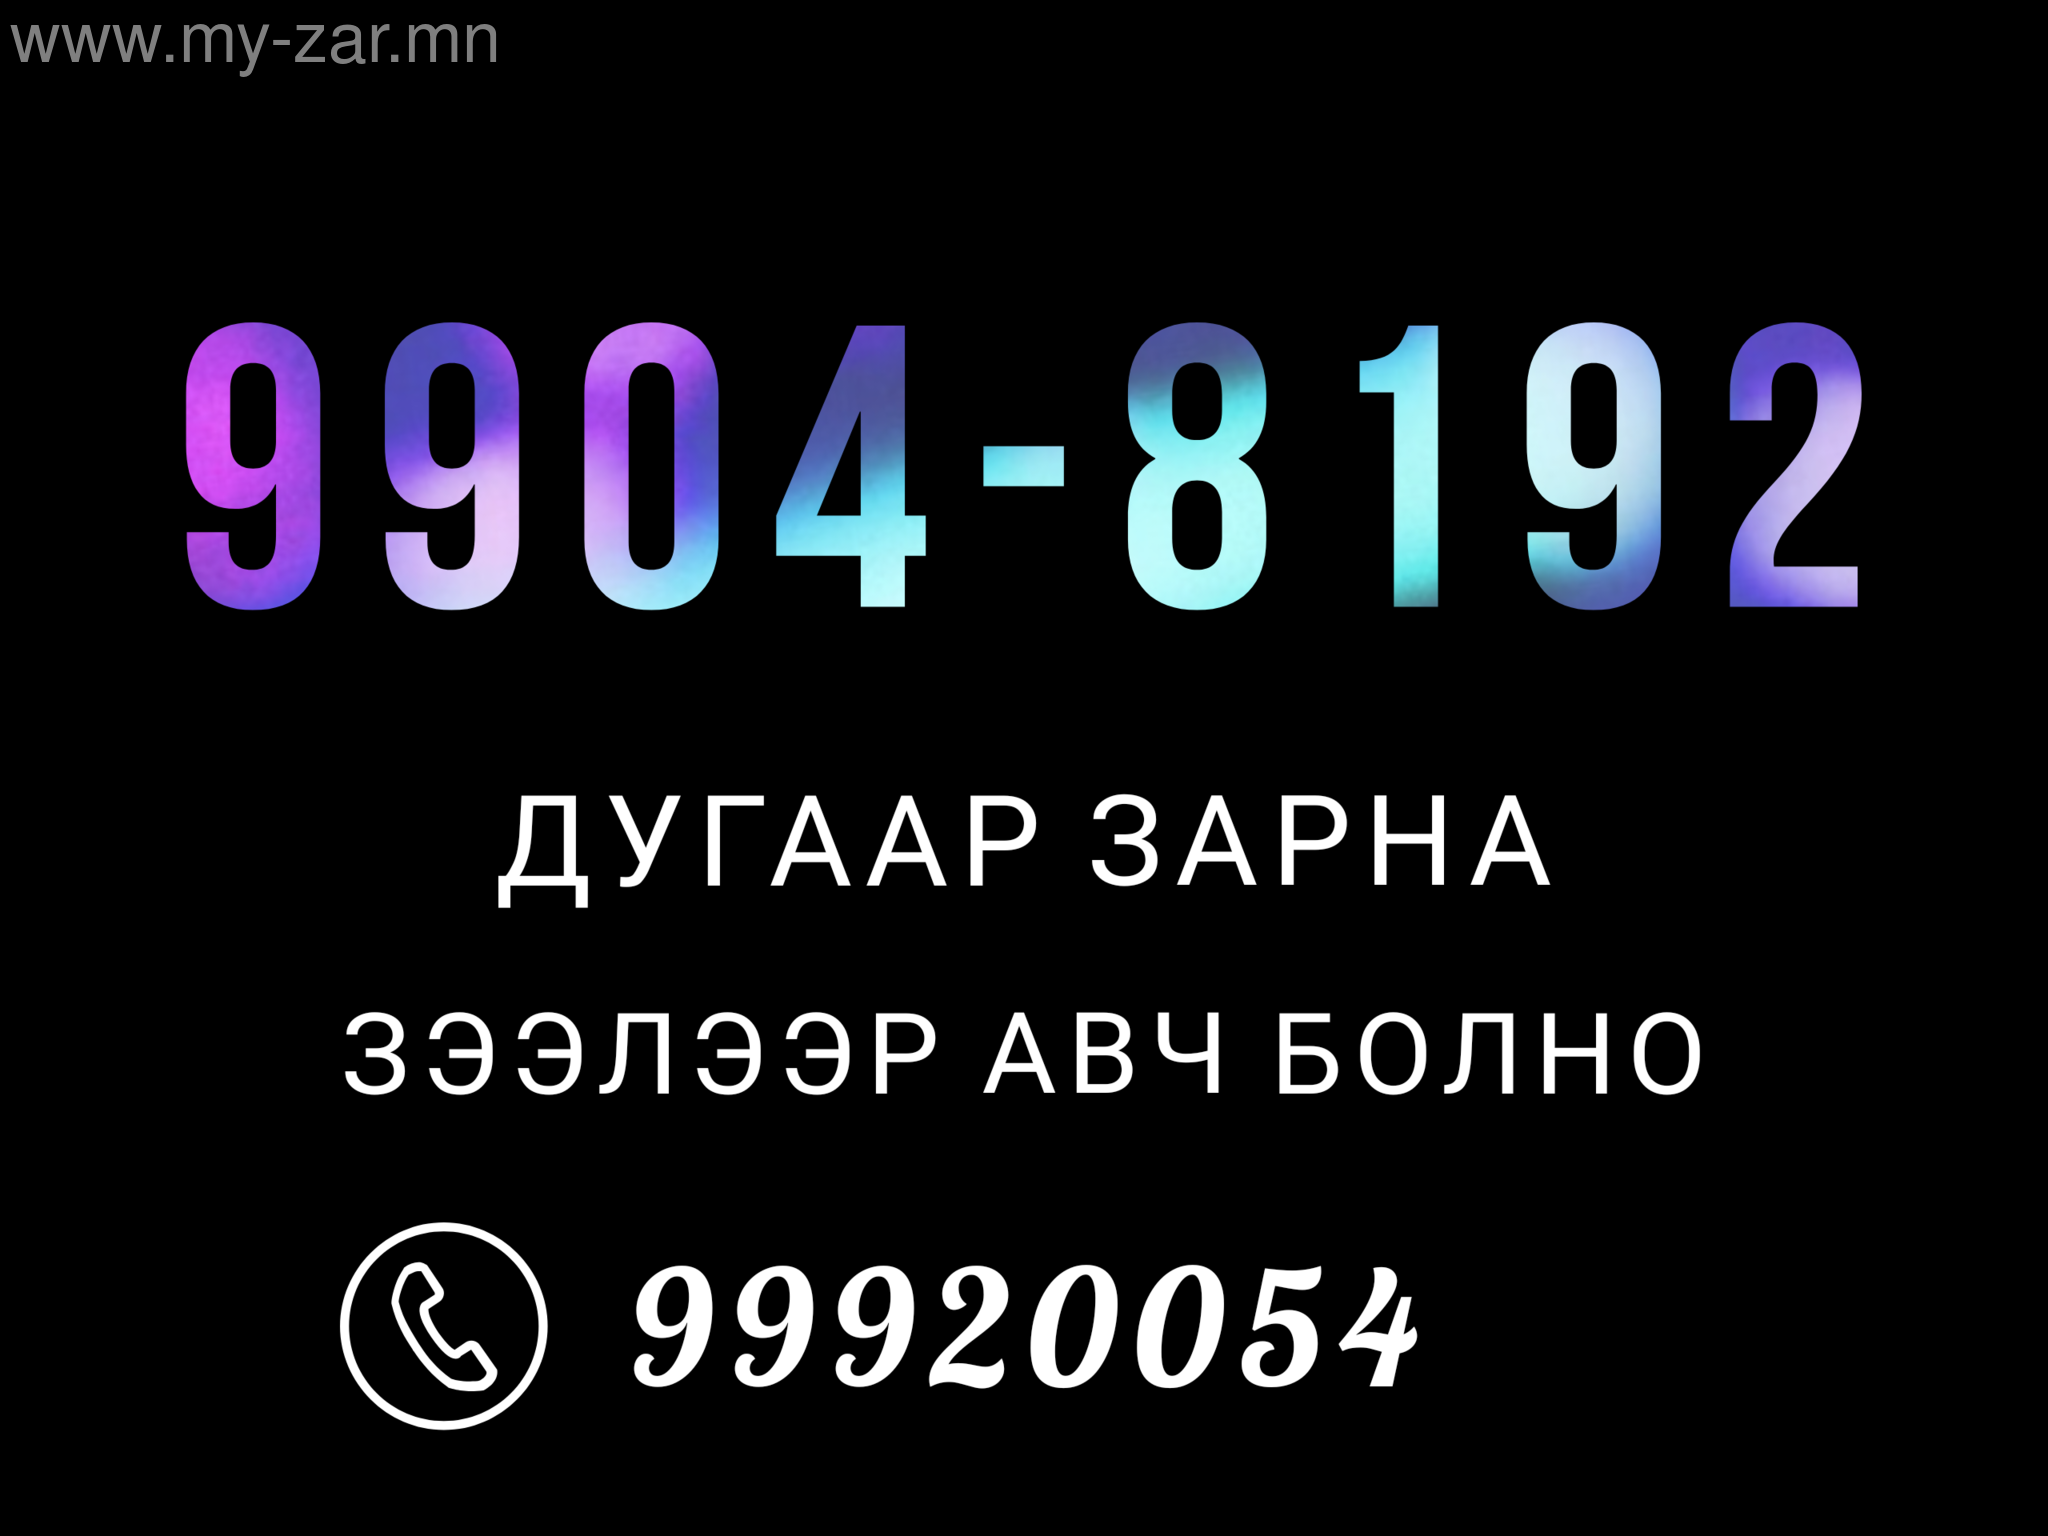 9904-8192 Дугаар Зарна
Урьдчилгаа төлөөд зээлээр авч болно
Утас 99920054